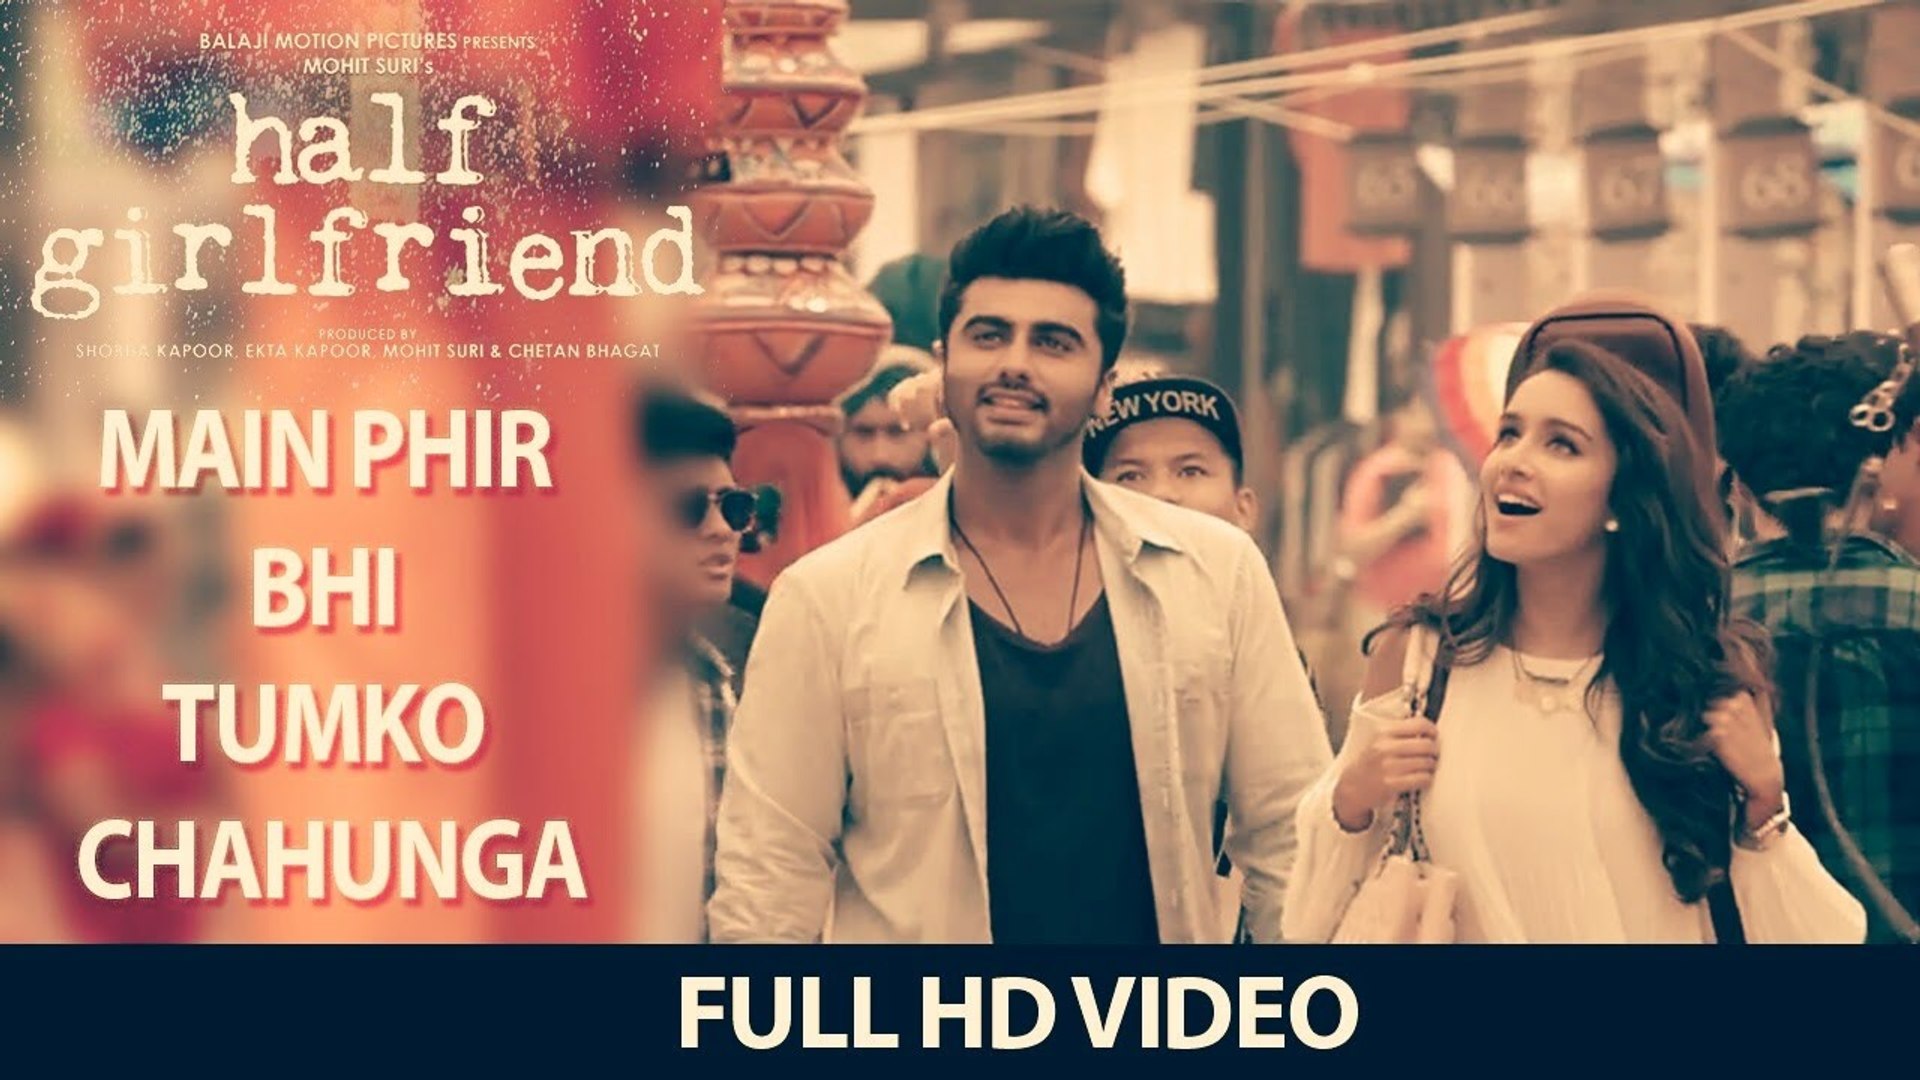 Main Phir Bhi Tumko Chahunga Full Song (Video) | Half Girlfriend | Arijit  Singh | Shraddha Kapoor - video Dailymotion